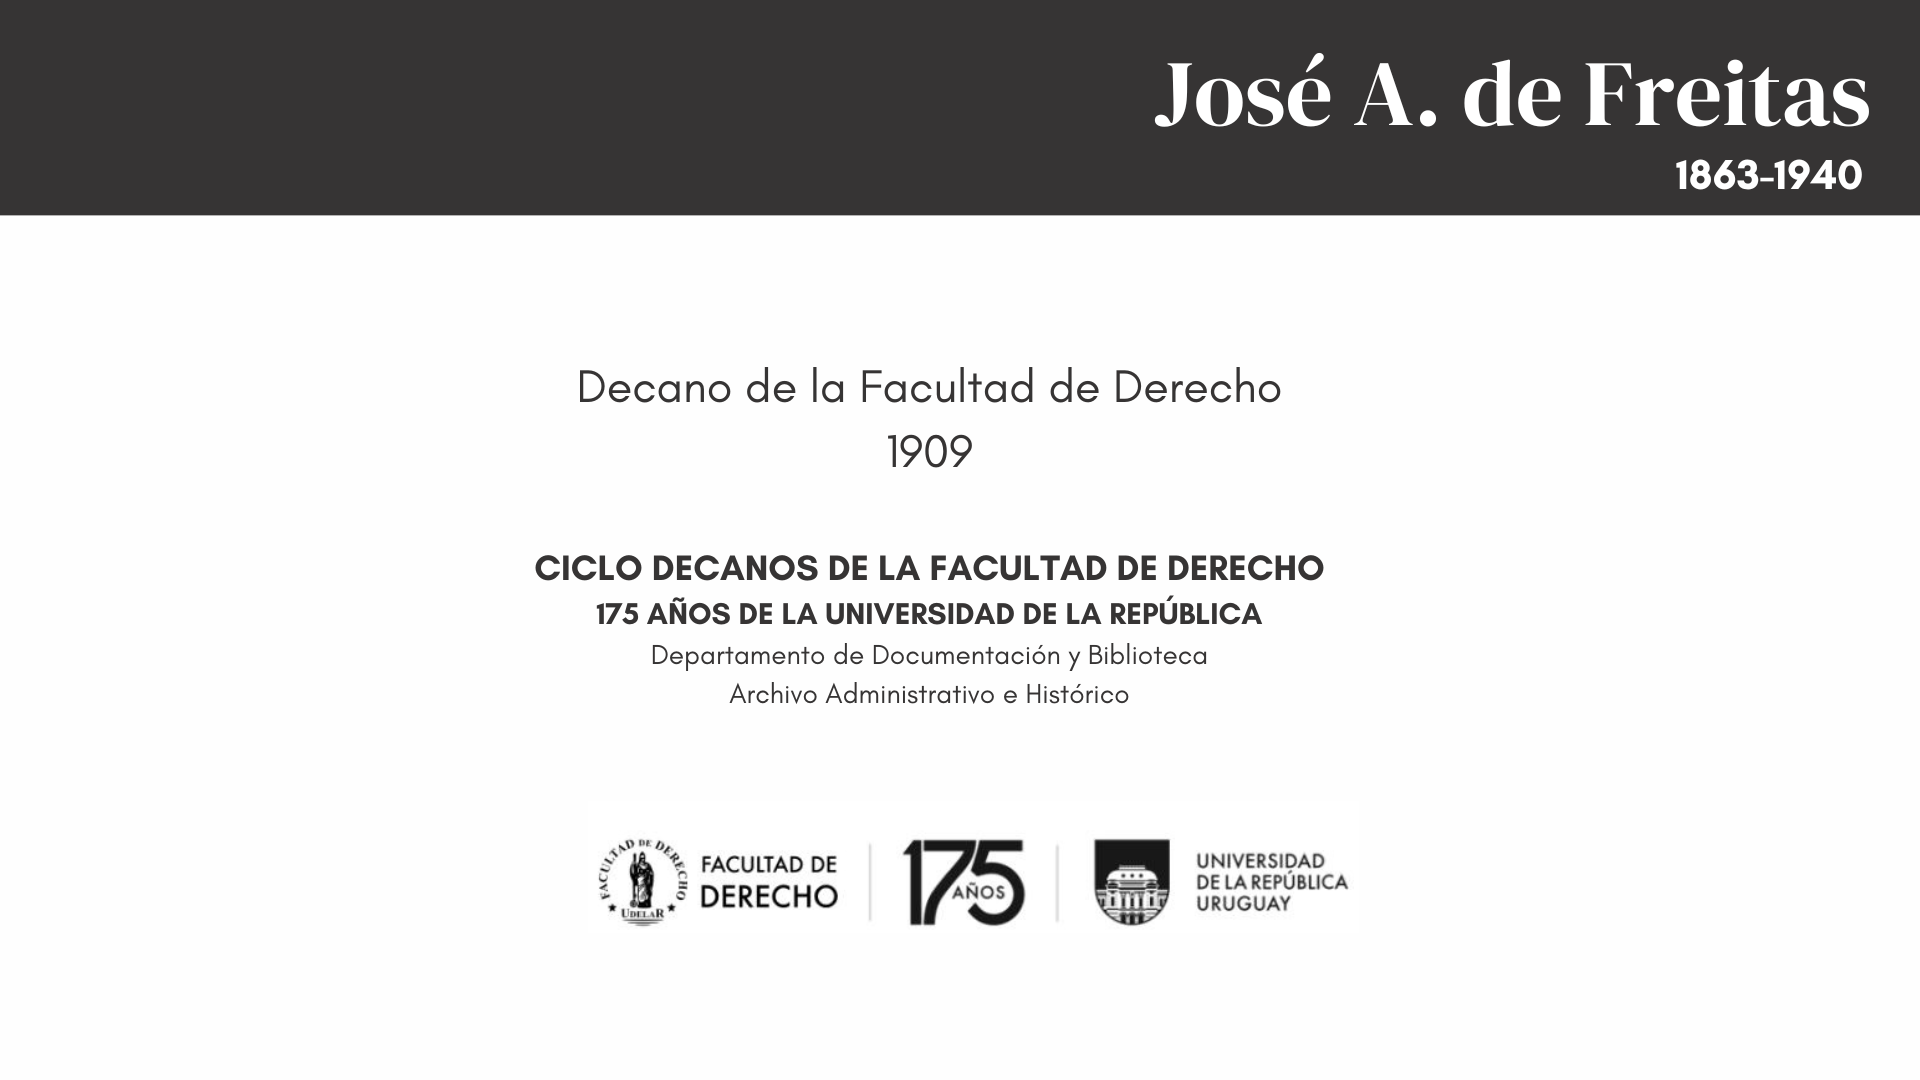 CICLO DECANOS - JOSÉ A. DE FREITAS